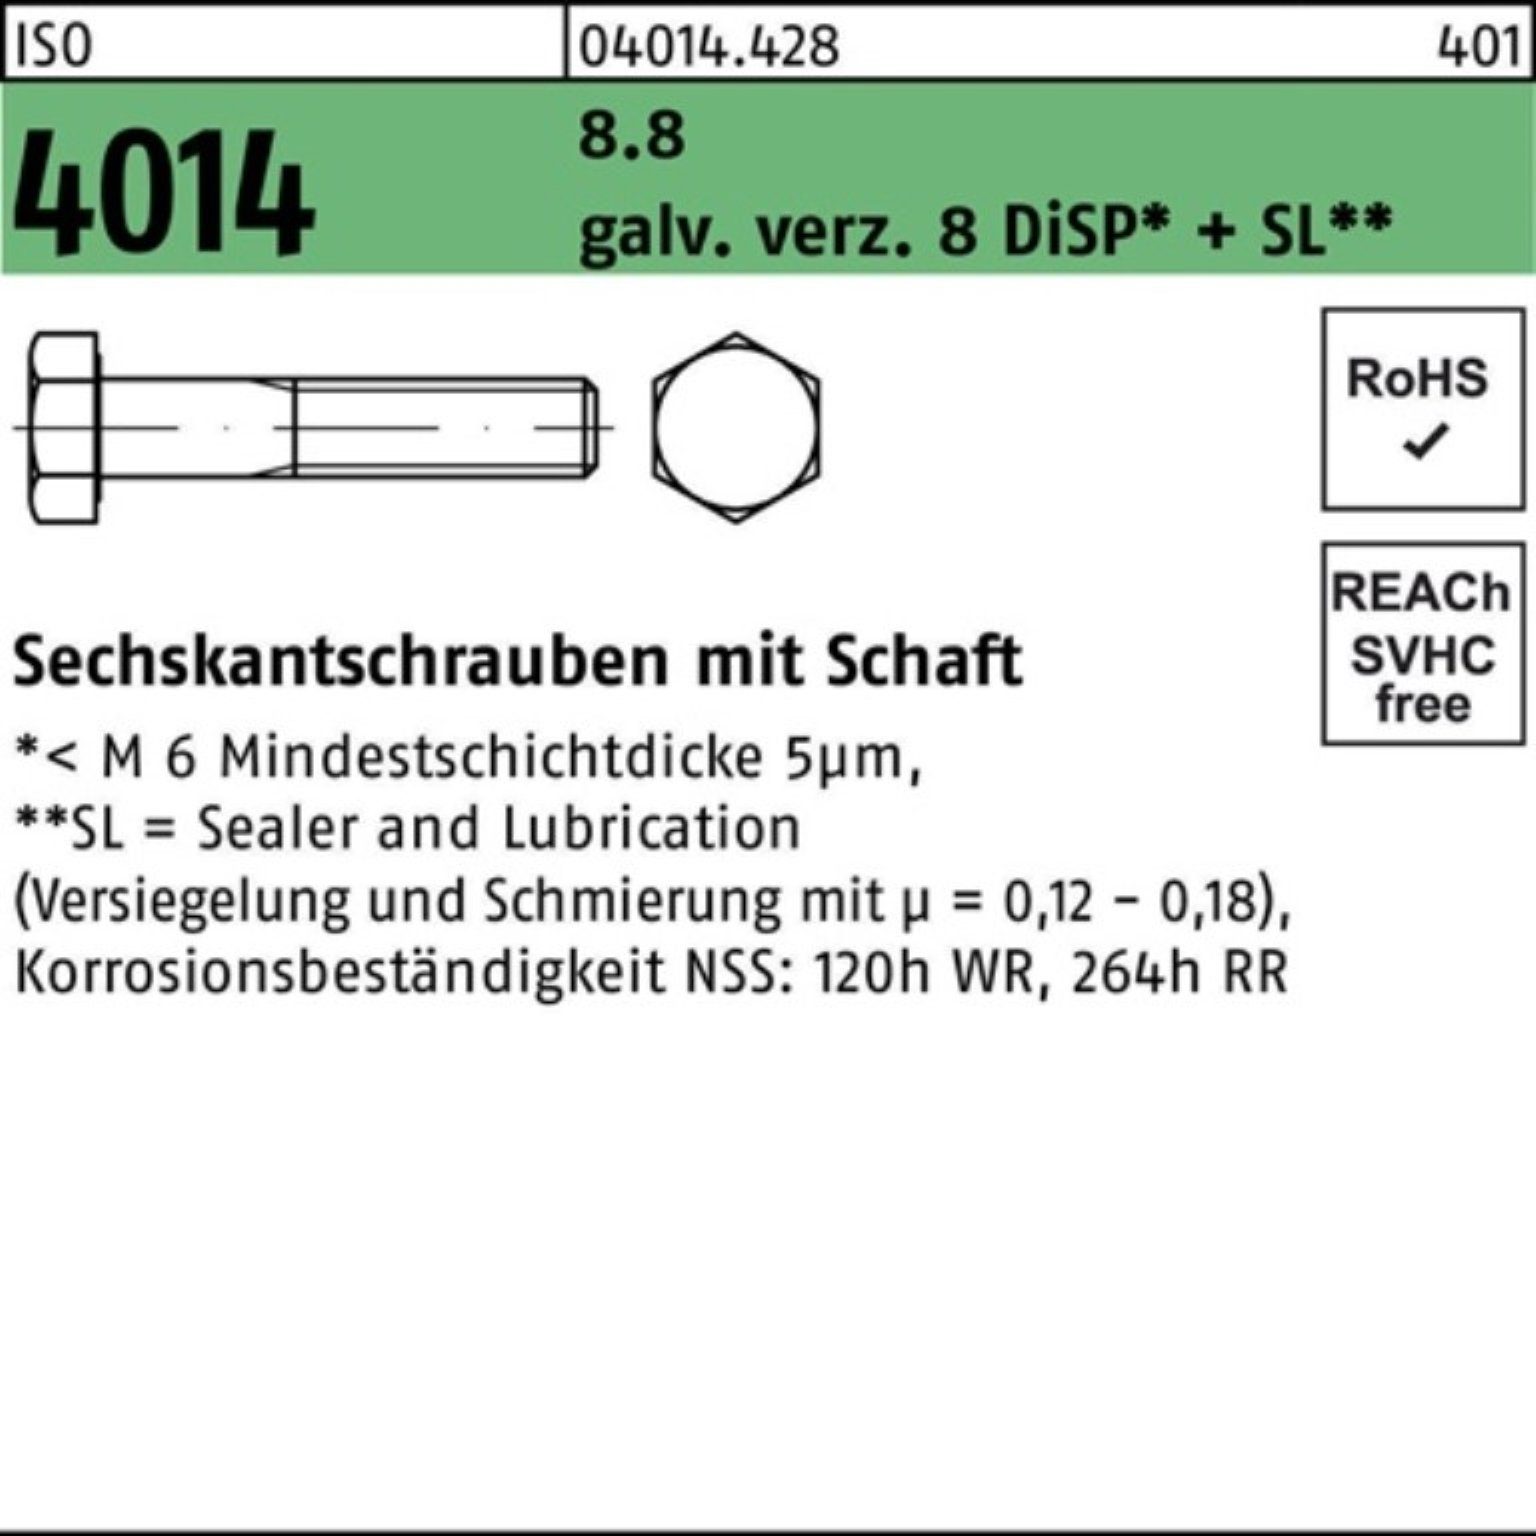 Sechskantschraube Bufab 8.8 M12x130 galv.verz. 4014 100er ISO 8 Pack Sechskantschraube Schaft